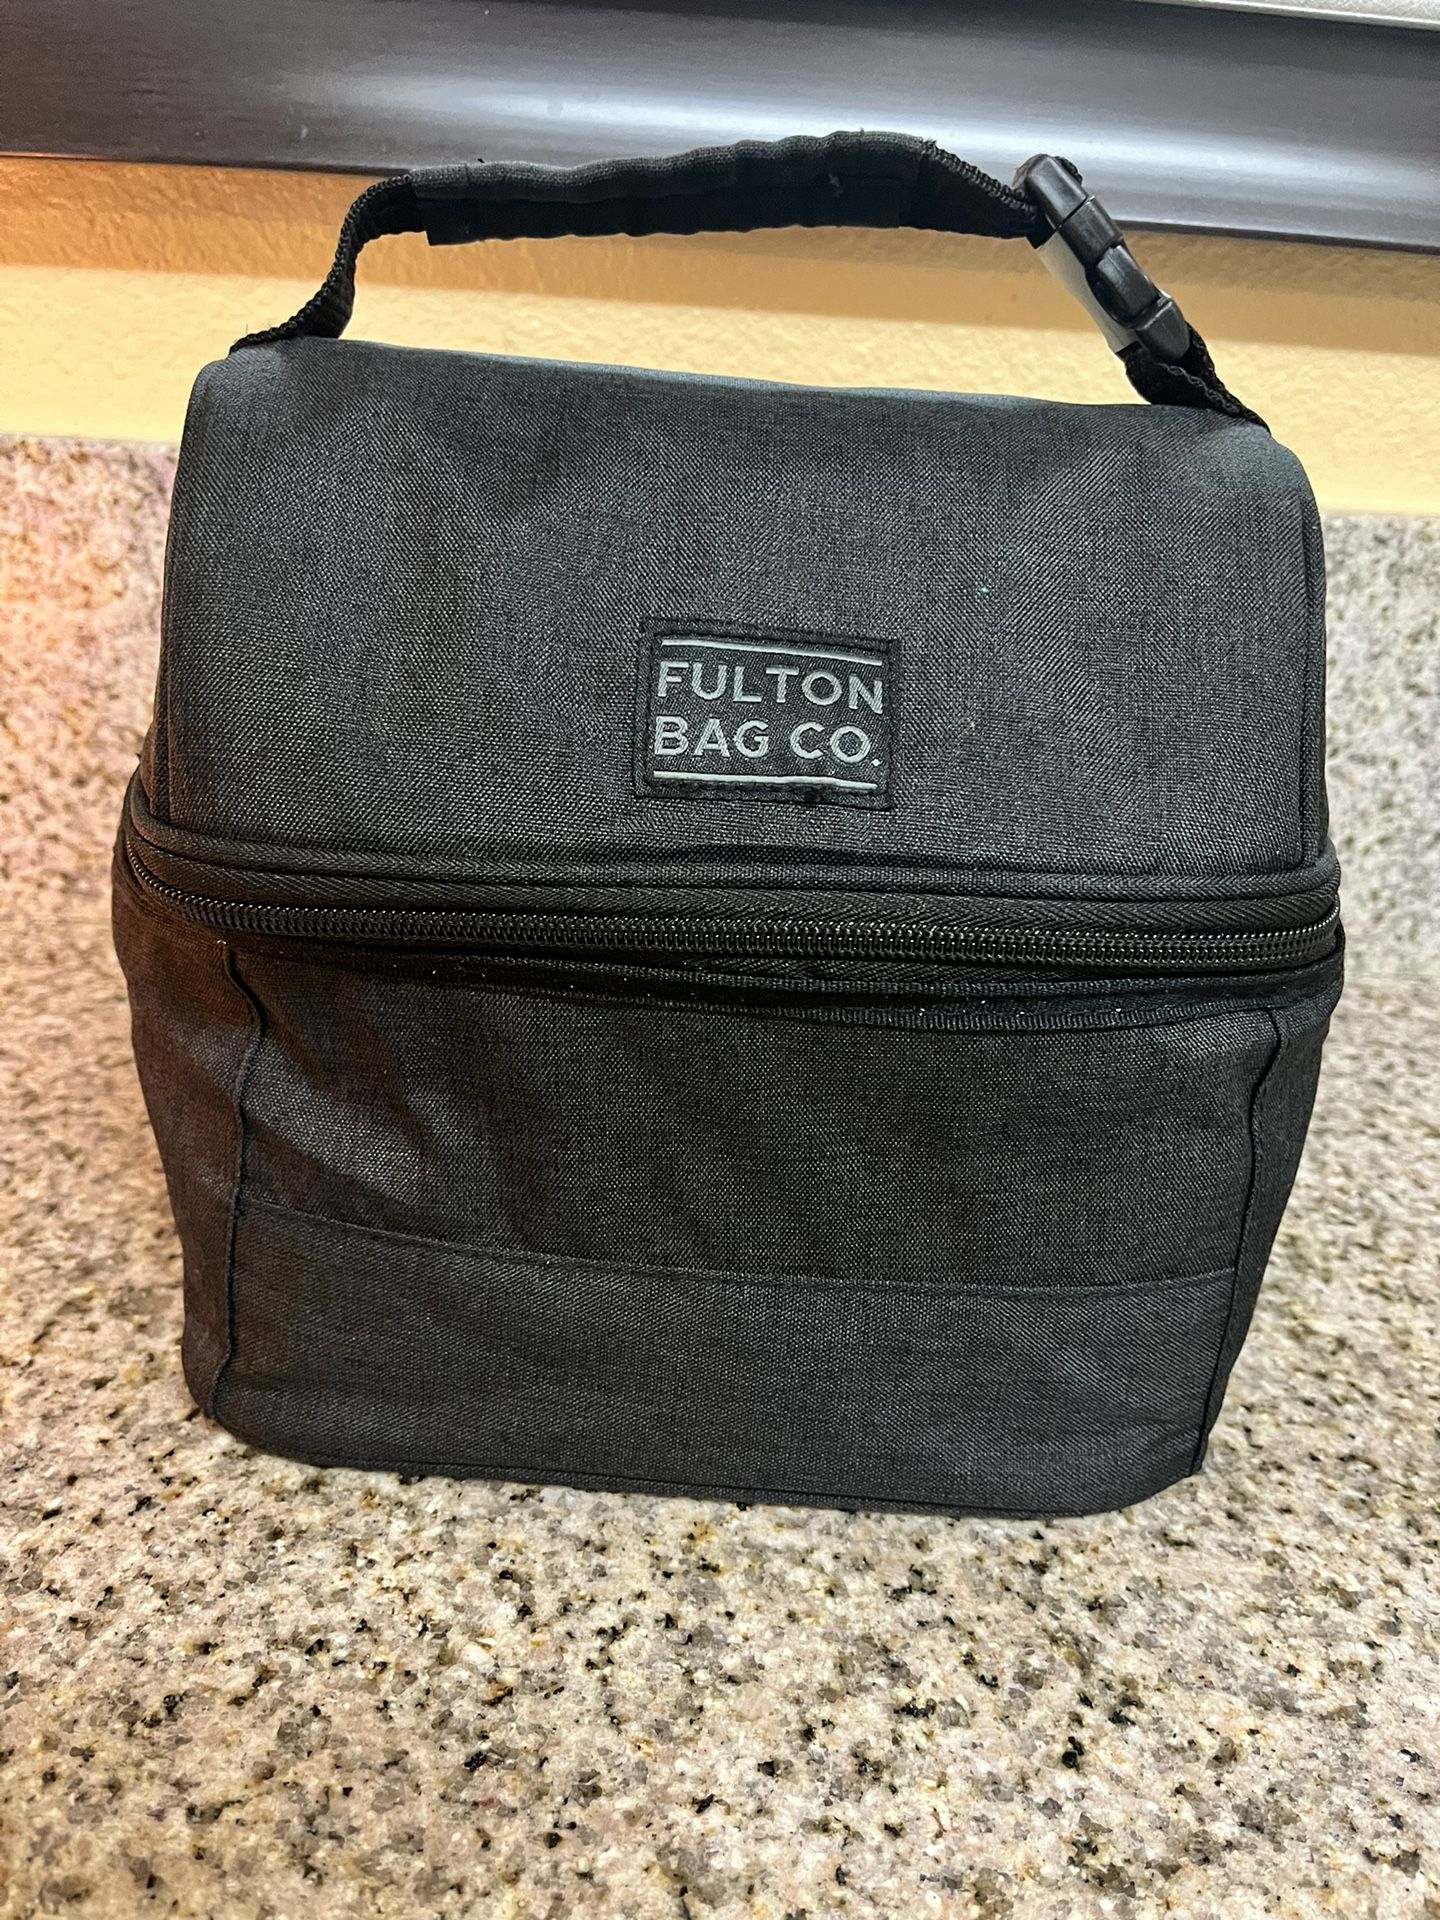 Fulton Bag Co